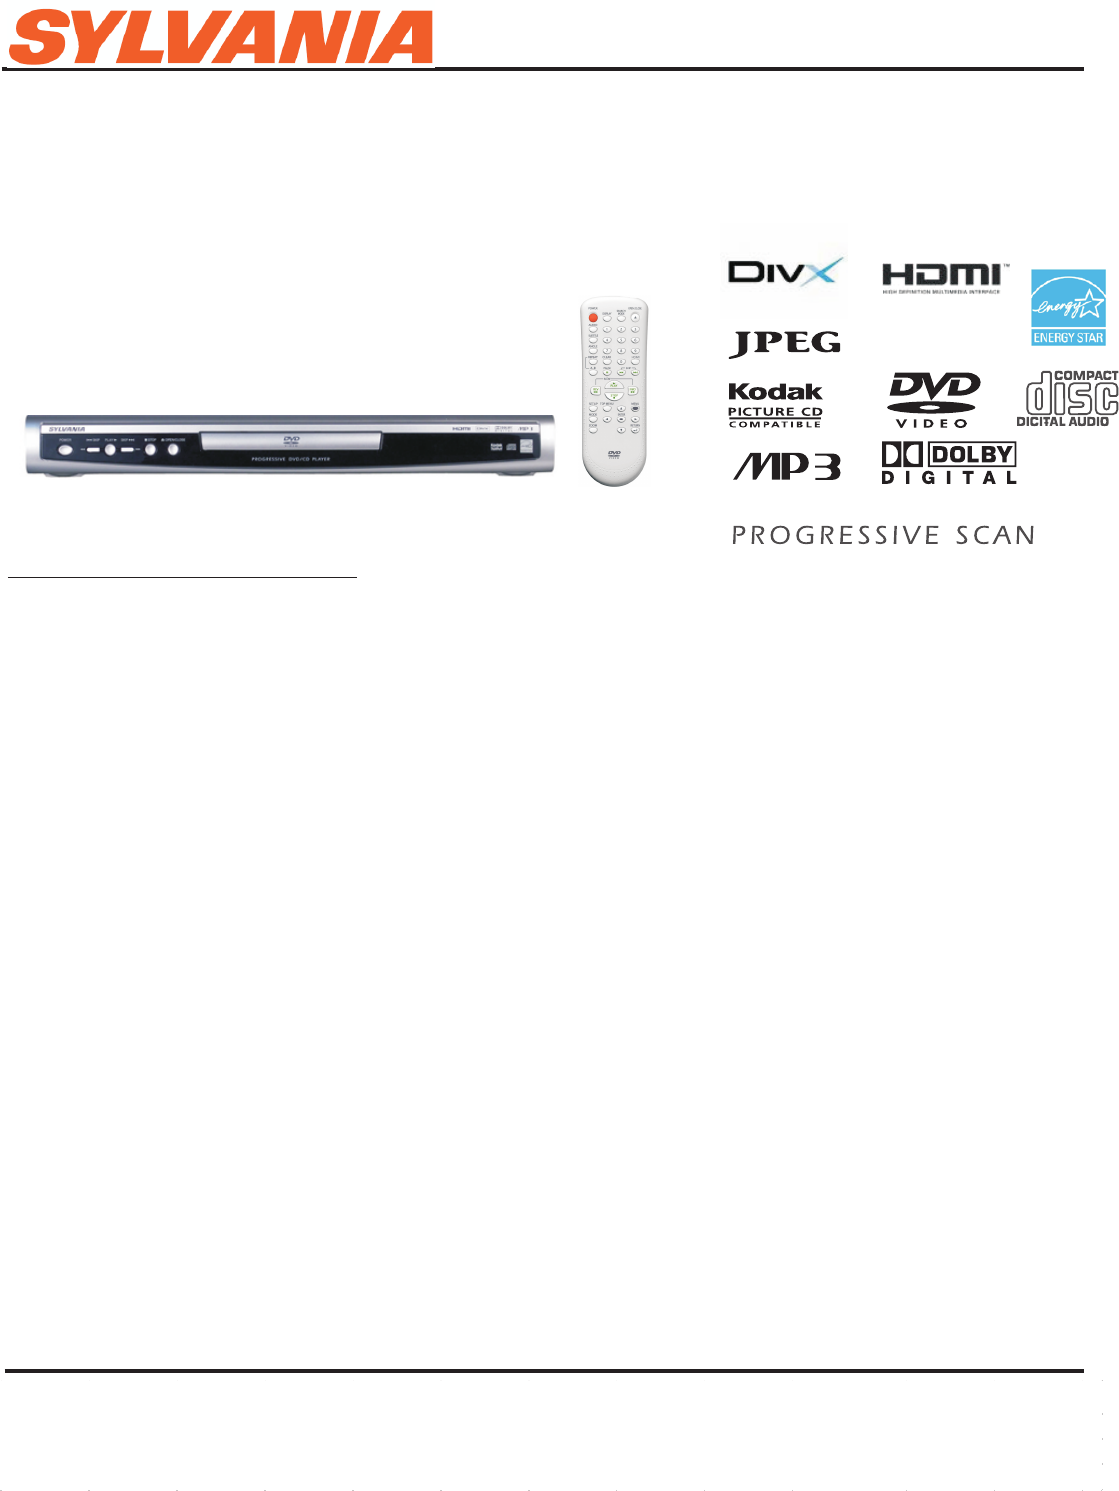 Sylvania DVD Player DP170SL8 User Guide | ManualsOnline.com